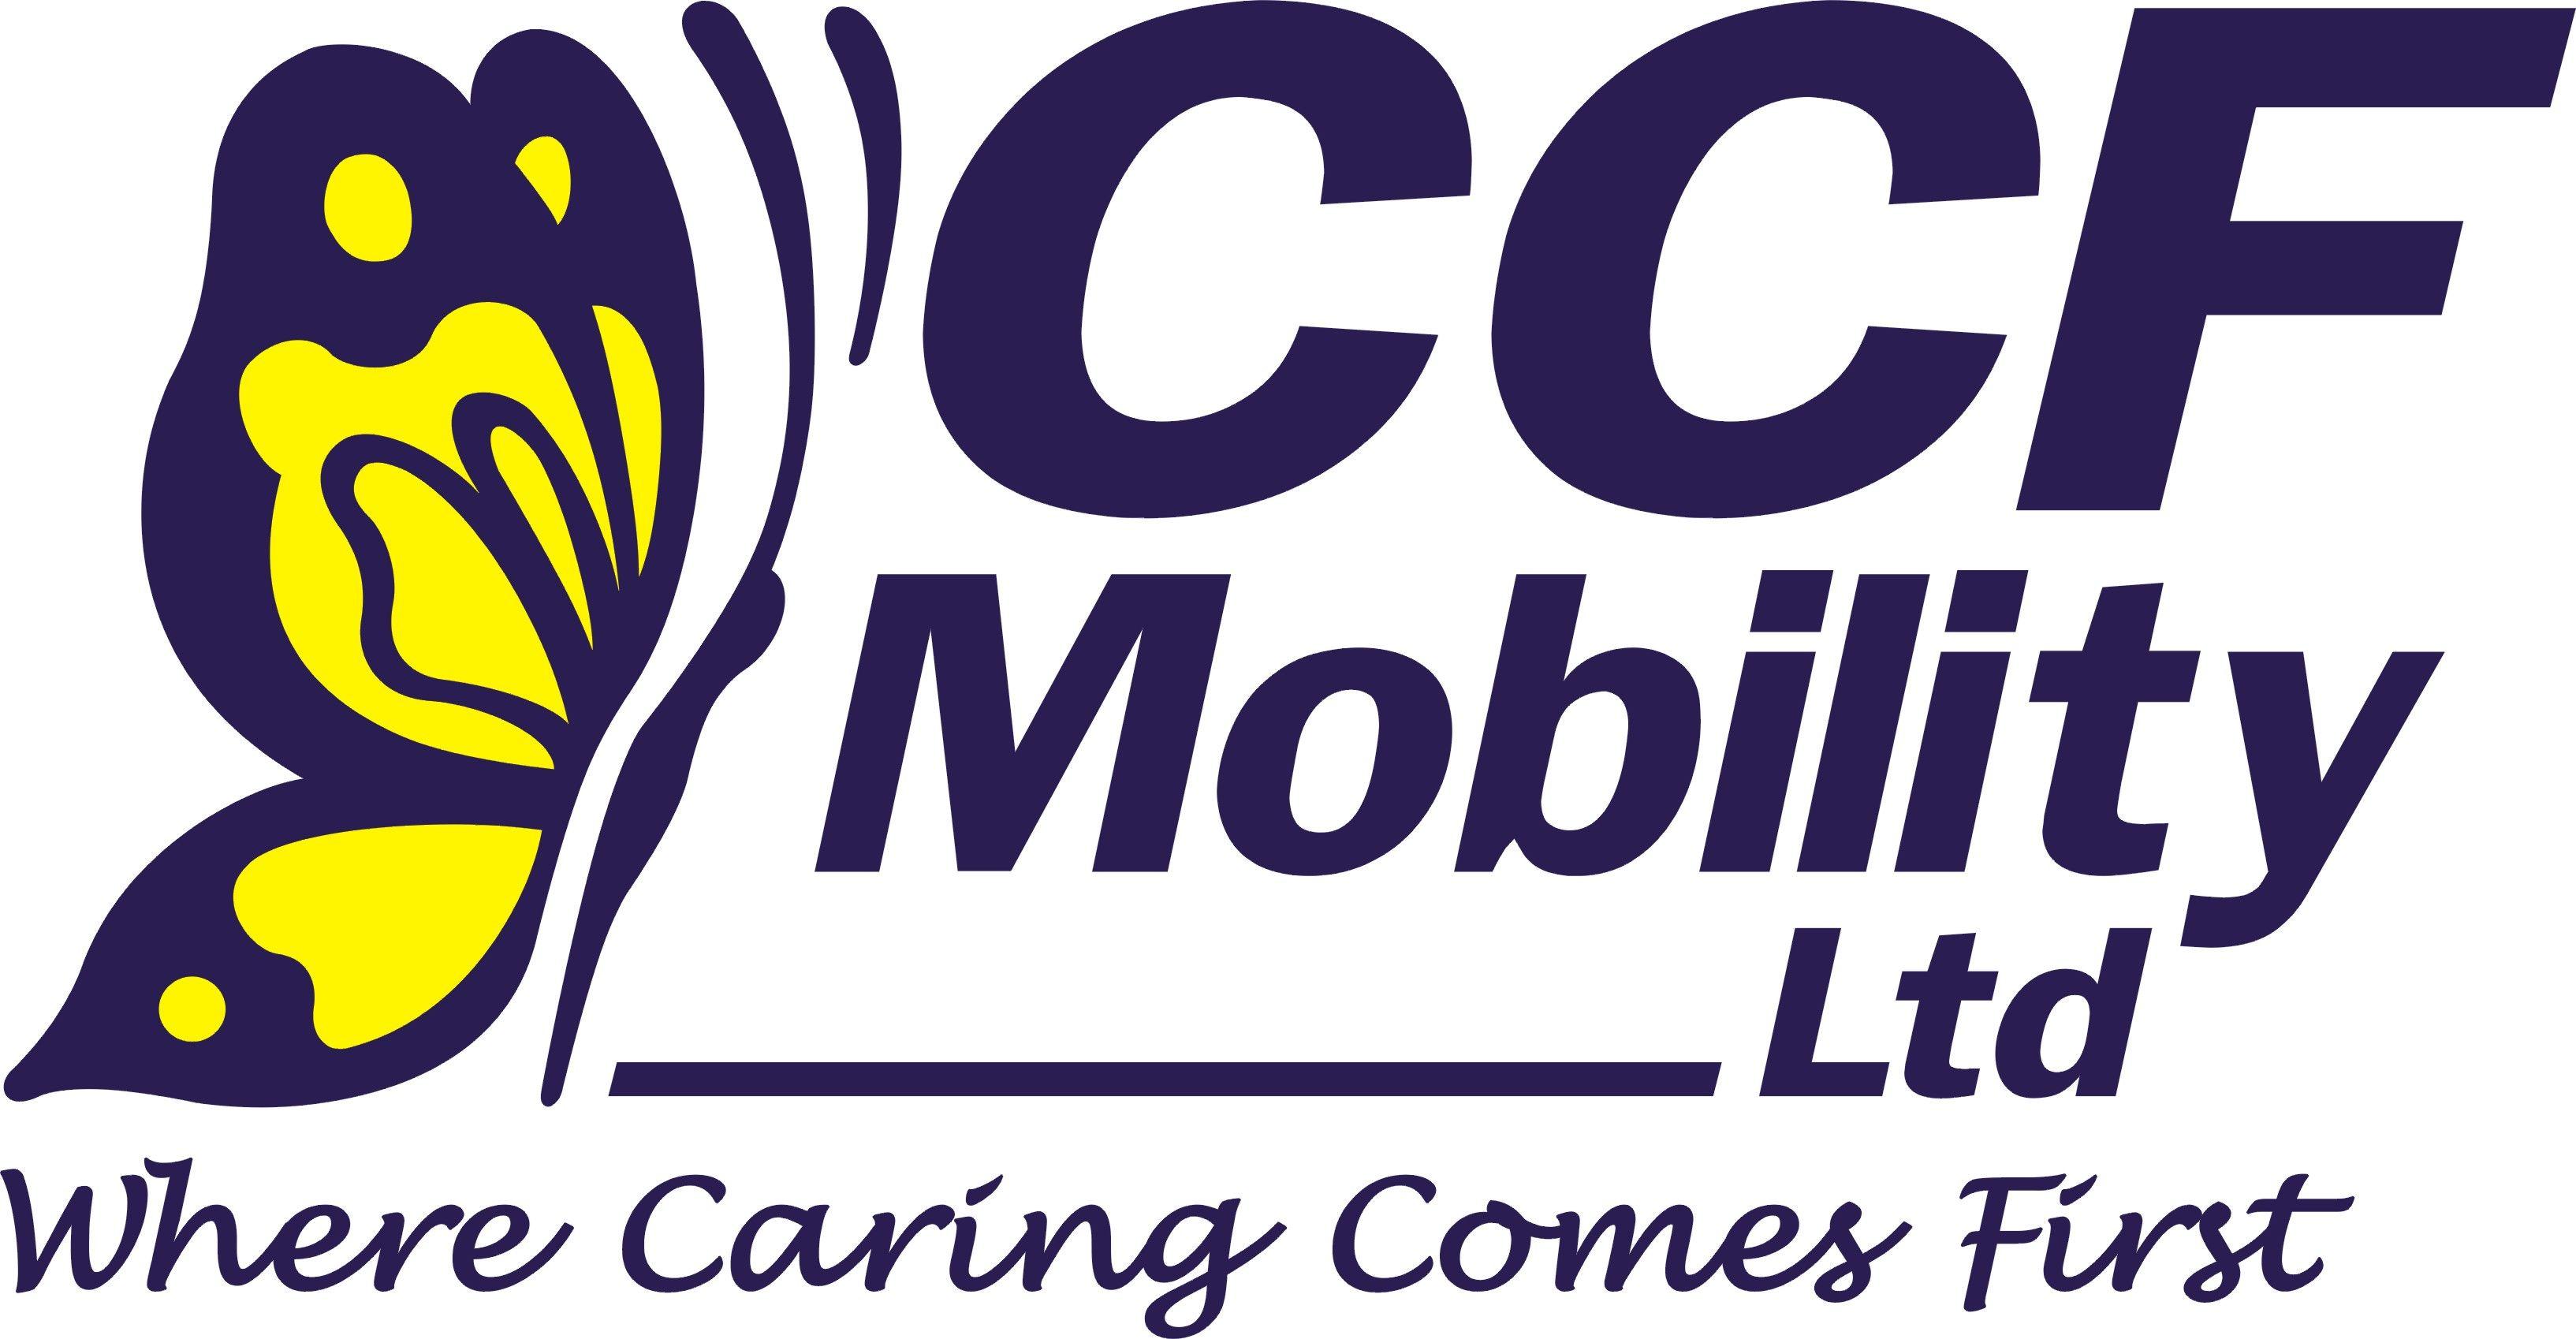 CCF Logo - CCF Logo original 100% – CCF Mobility